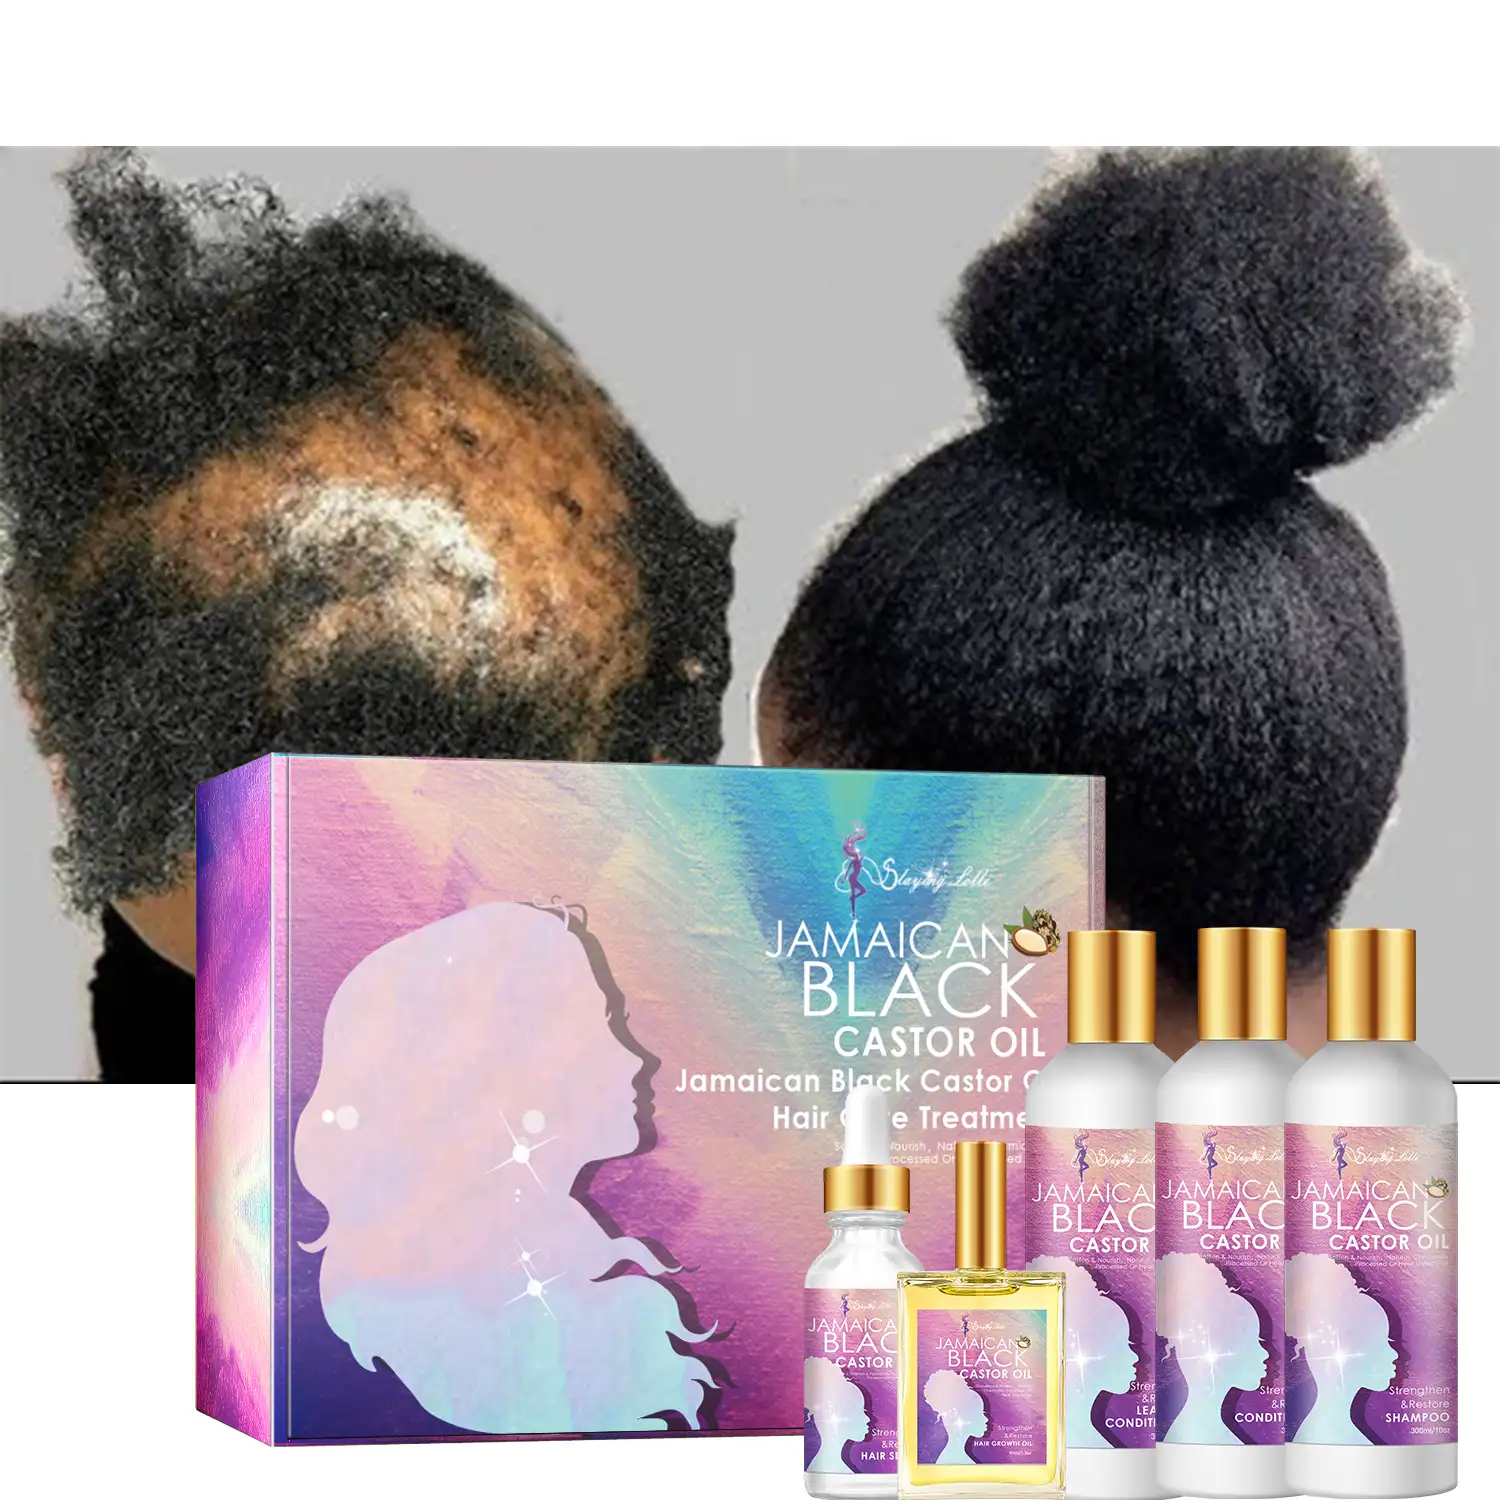 में सुधार खोपड़ी स्वास्थ्य और पोषण जड़ों अफ्रीकी हर्बल बाल विकास तेल तेल बालों की देखभाल उत्पादों काले महिलाओं के लिए